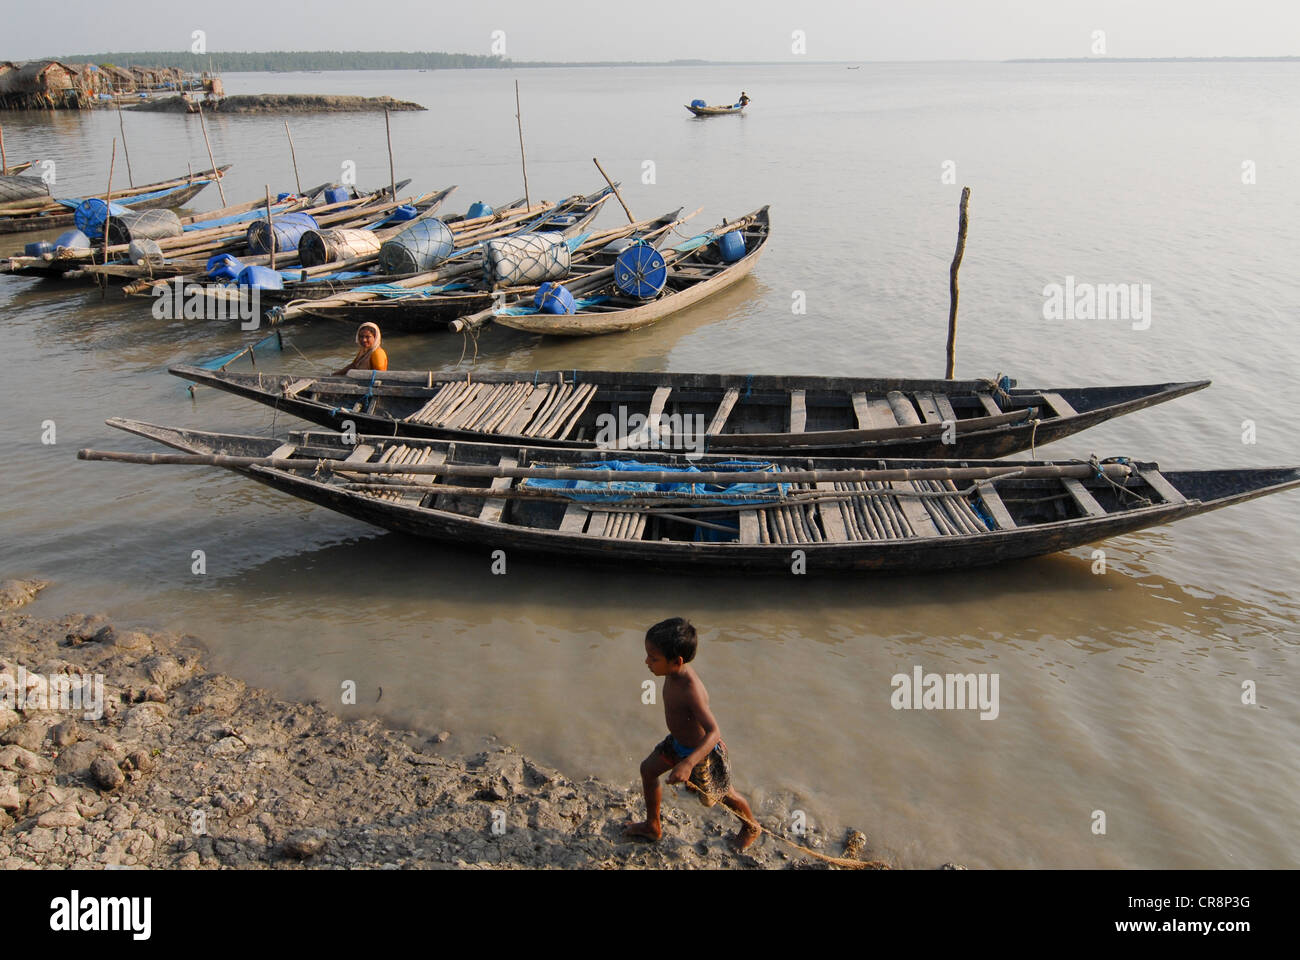 Bangladesh , villaggio Kalabogi presso il river Shibsha vicino alla baia del Bengala, i popoli sono i più colpiti dai cambiamenti climatici, barche per la pesca Foto Stock